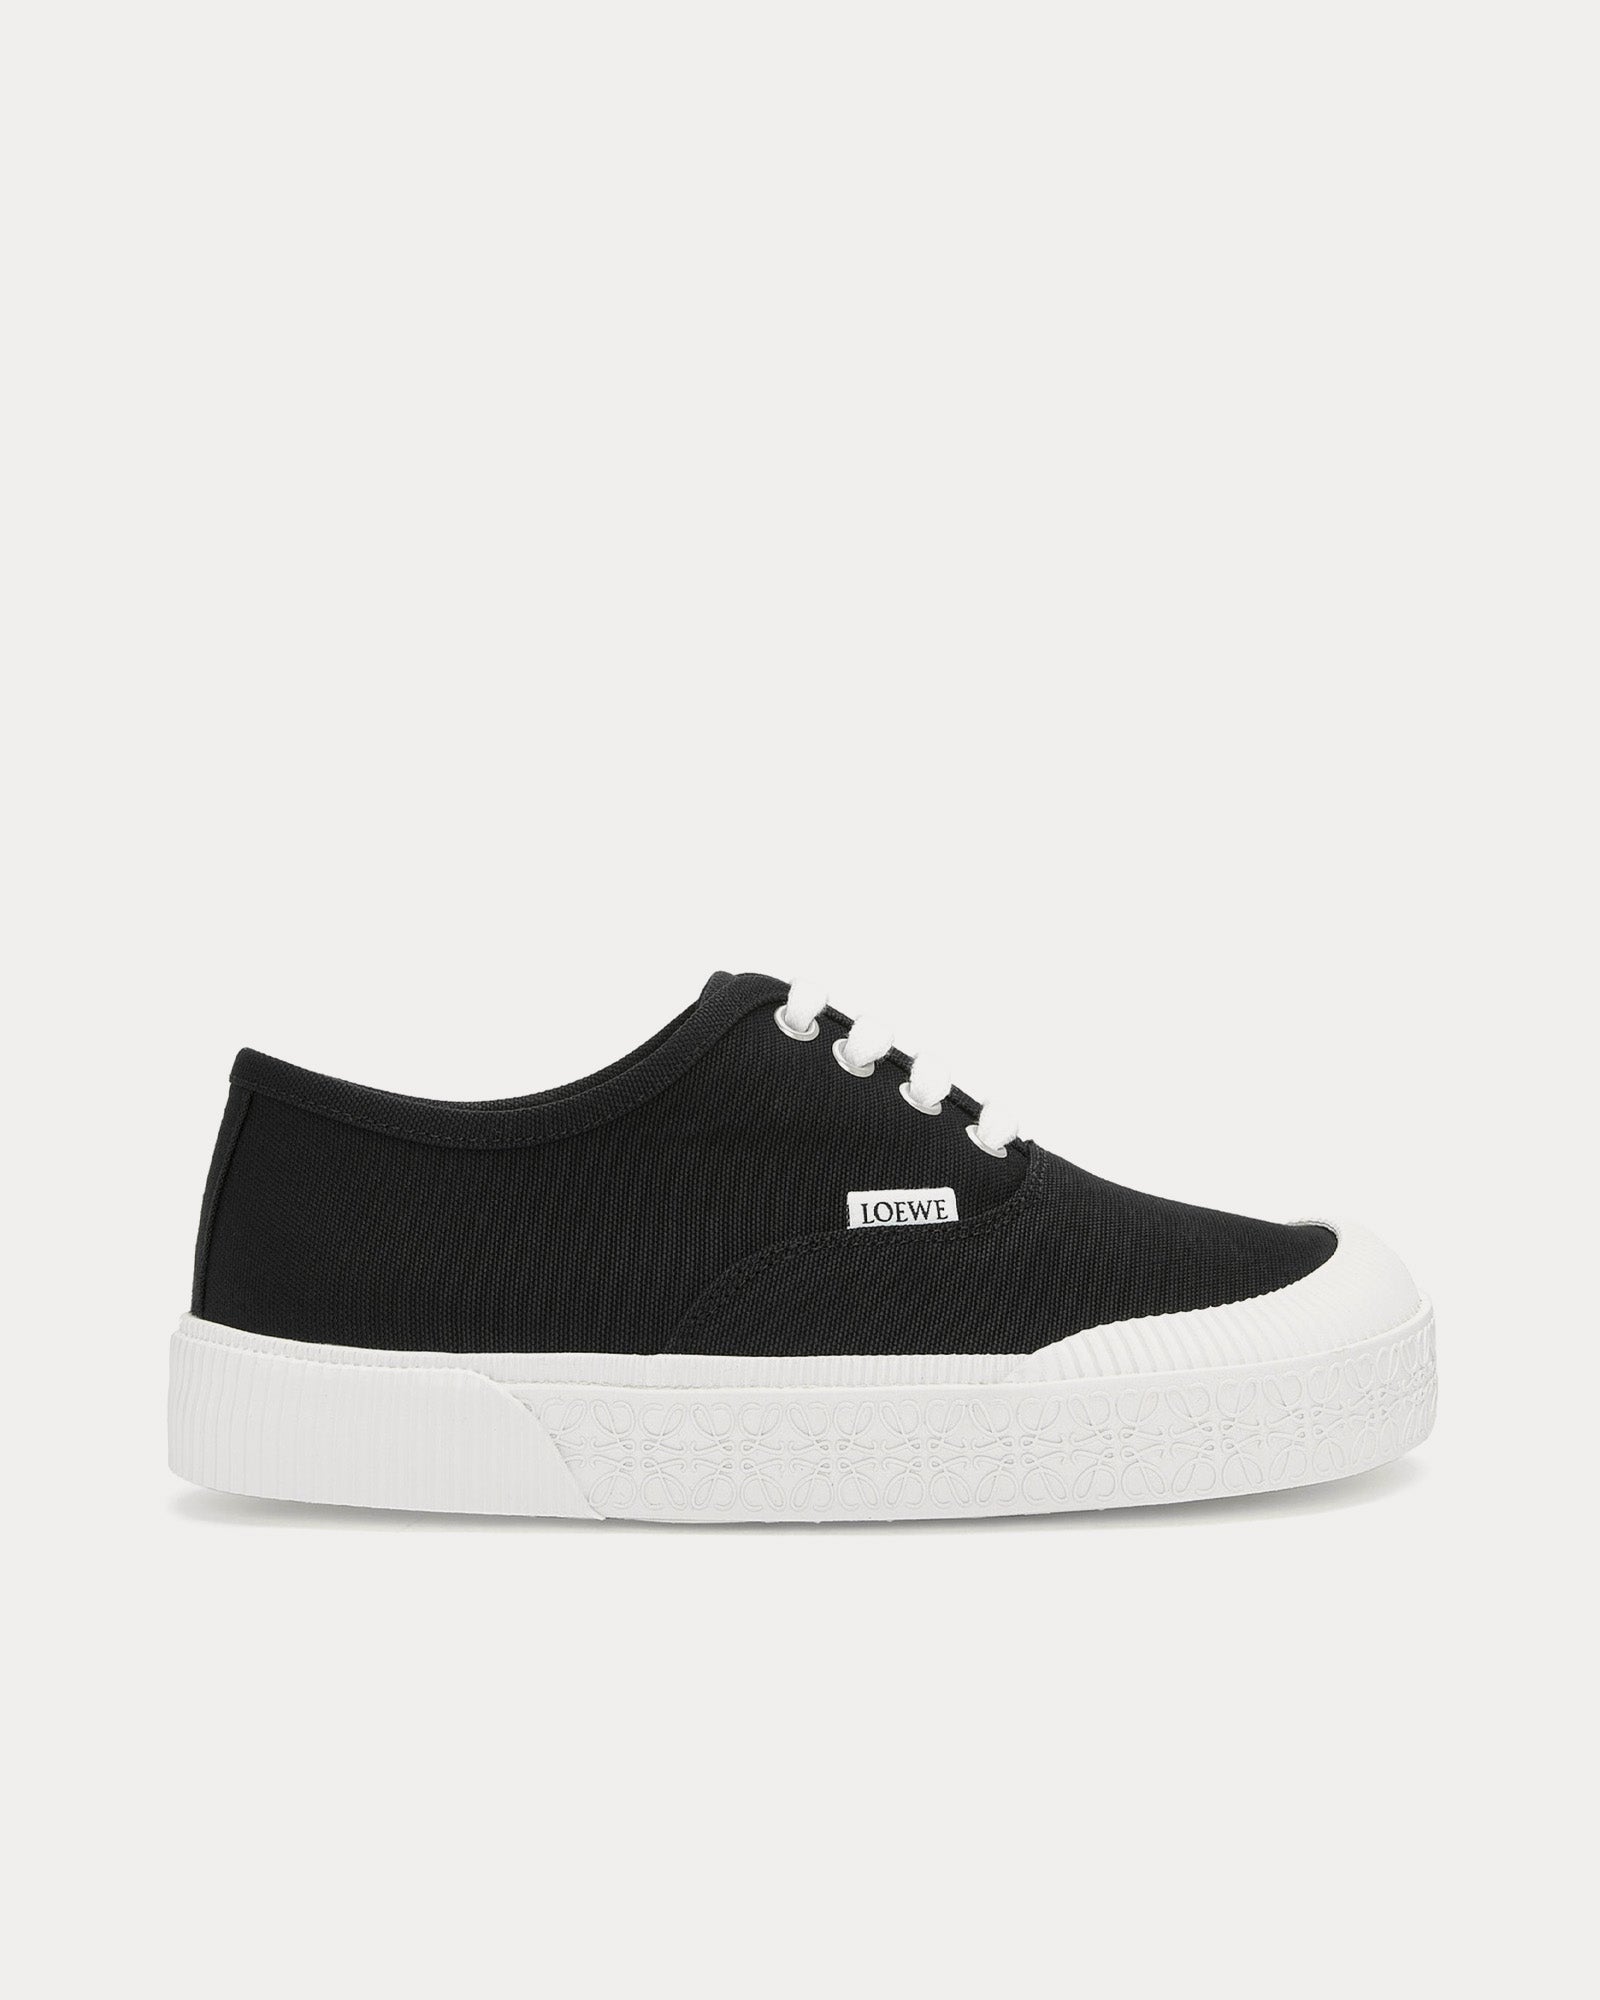 Loewe - Terra Vulca Canvas Black / White Low Top Sneakers